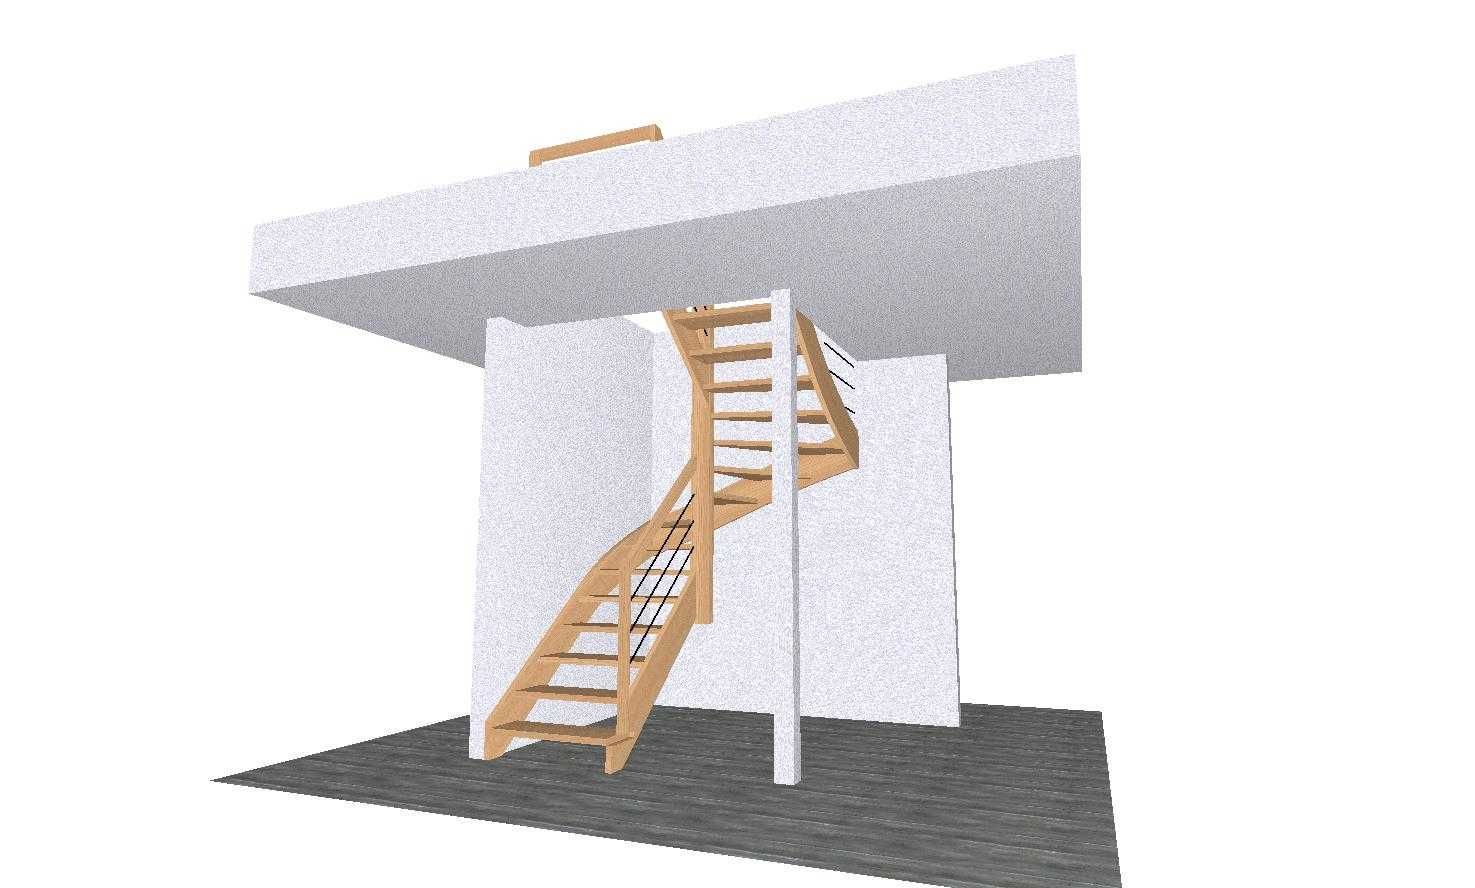 Usługowe projektowanie schodów pod wymiar / projekt schody cnc